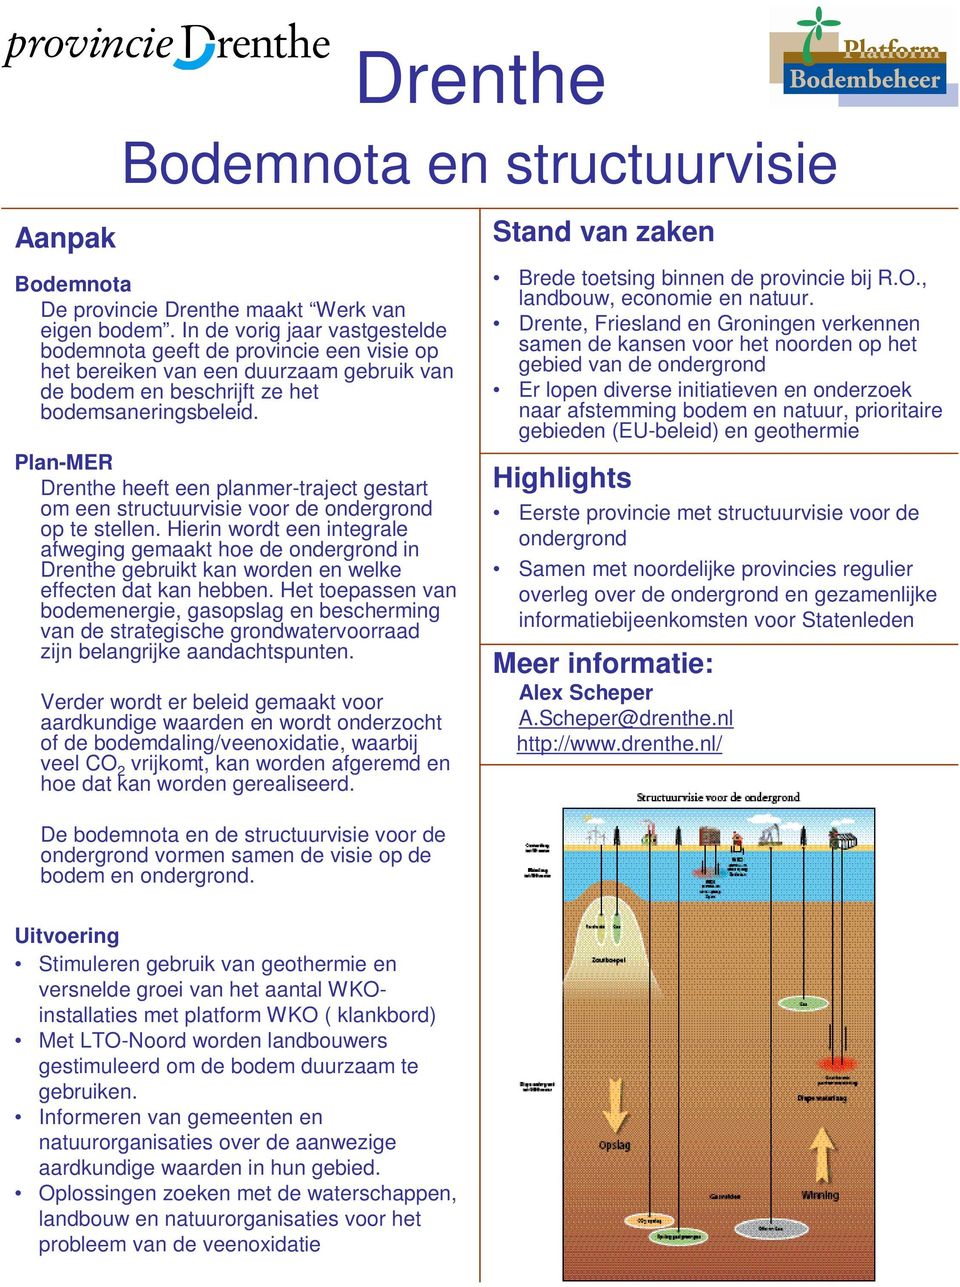 Plan-MER Drenthe heeft een planmer-traject gestart om een structuurvisie voor de ondergrond op te stellen.